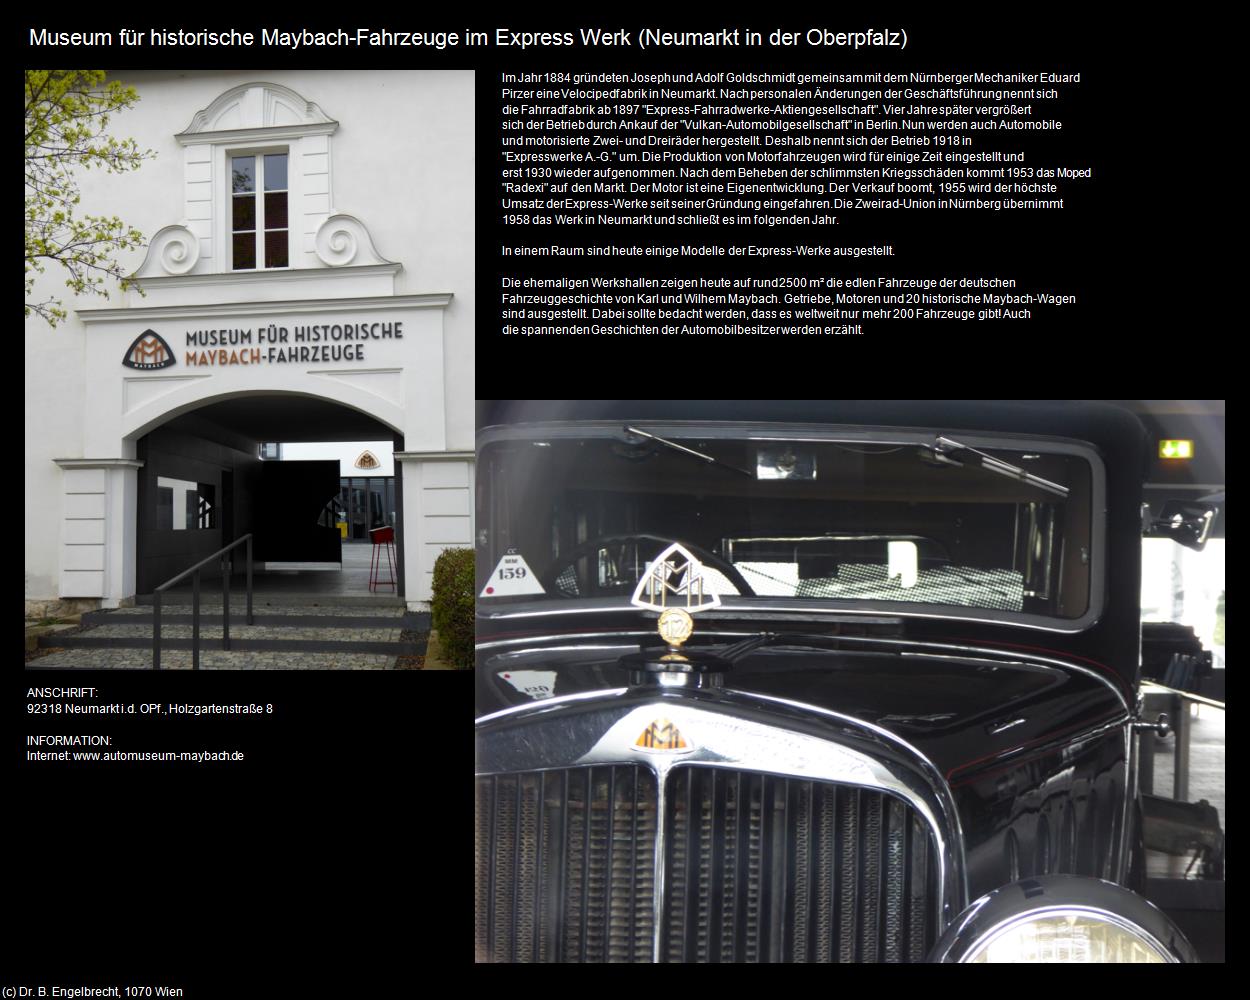 Museum für historische Maybach-Fahrzeuge in Express Werk (Neumarkt in der Oberpfalz) in Kulturatlas-BAYERN